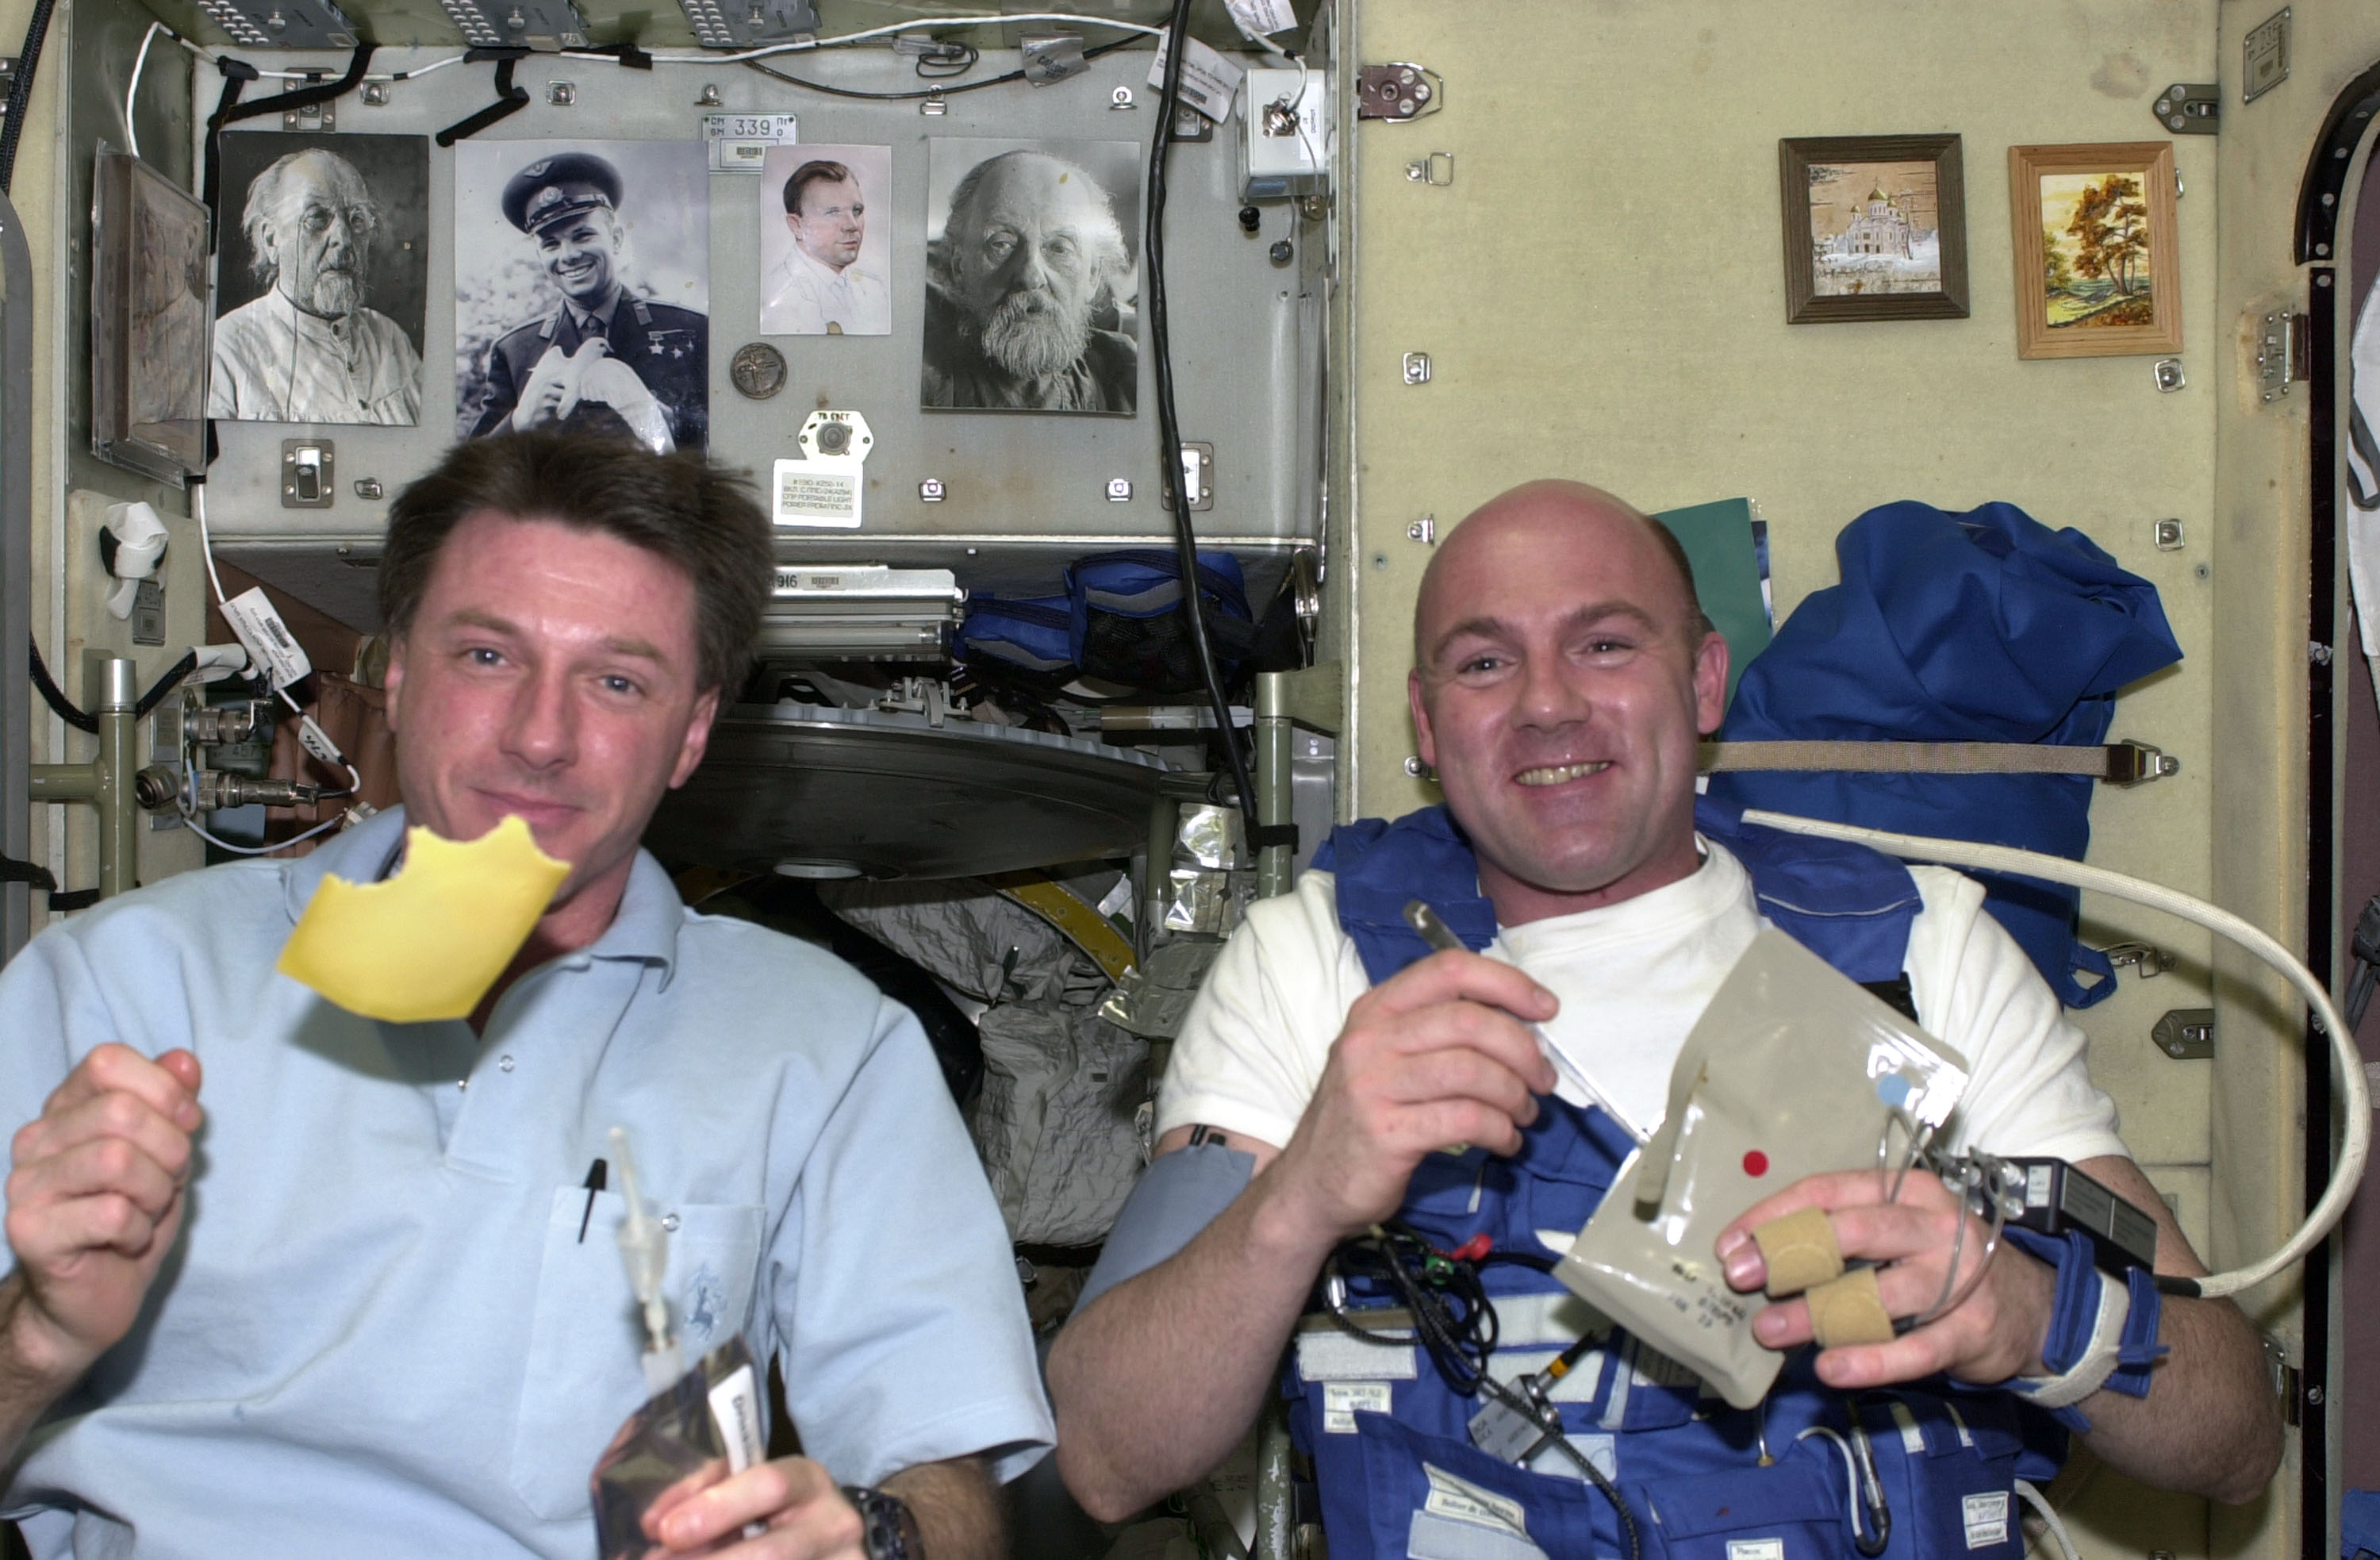 Чем питаются космонавты в космосе